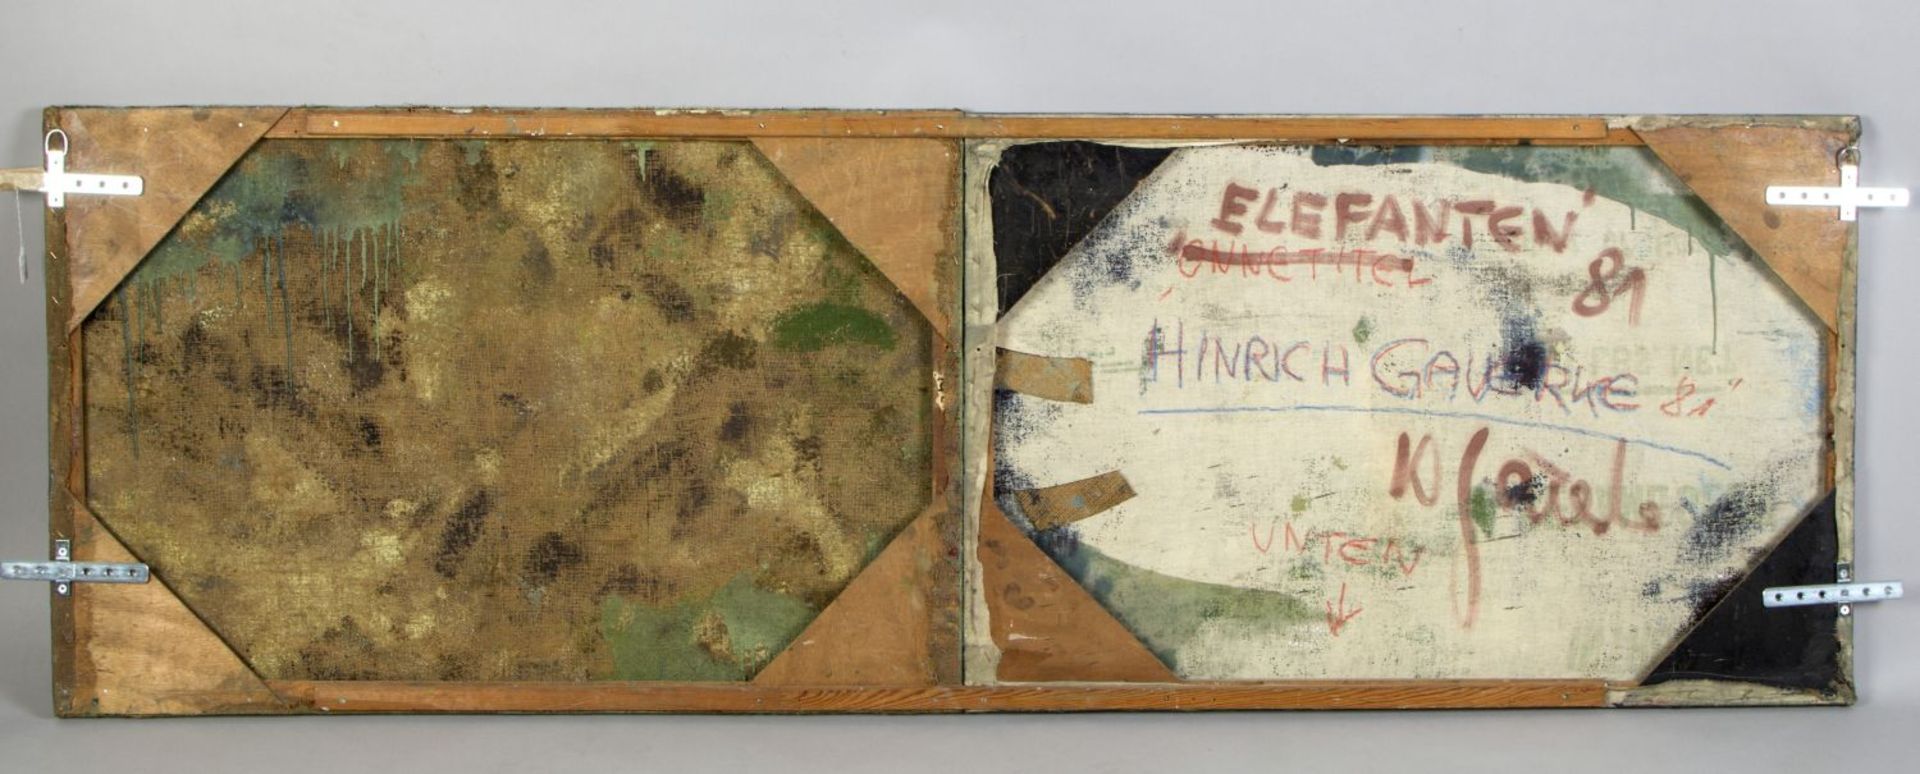 Gauerke, Hinrich. 1950 Hamburg Elefanten. Diptychon Wachs und Öl/Jute. 67 x 200,5 cm. - Bild 2 aus 2